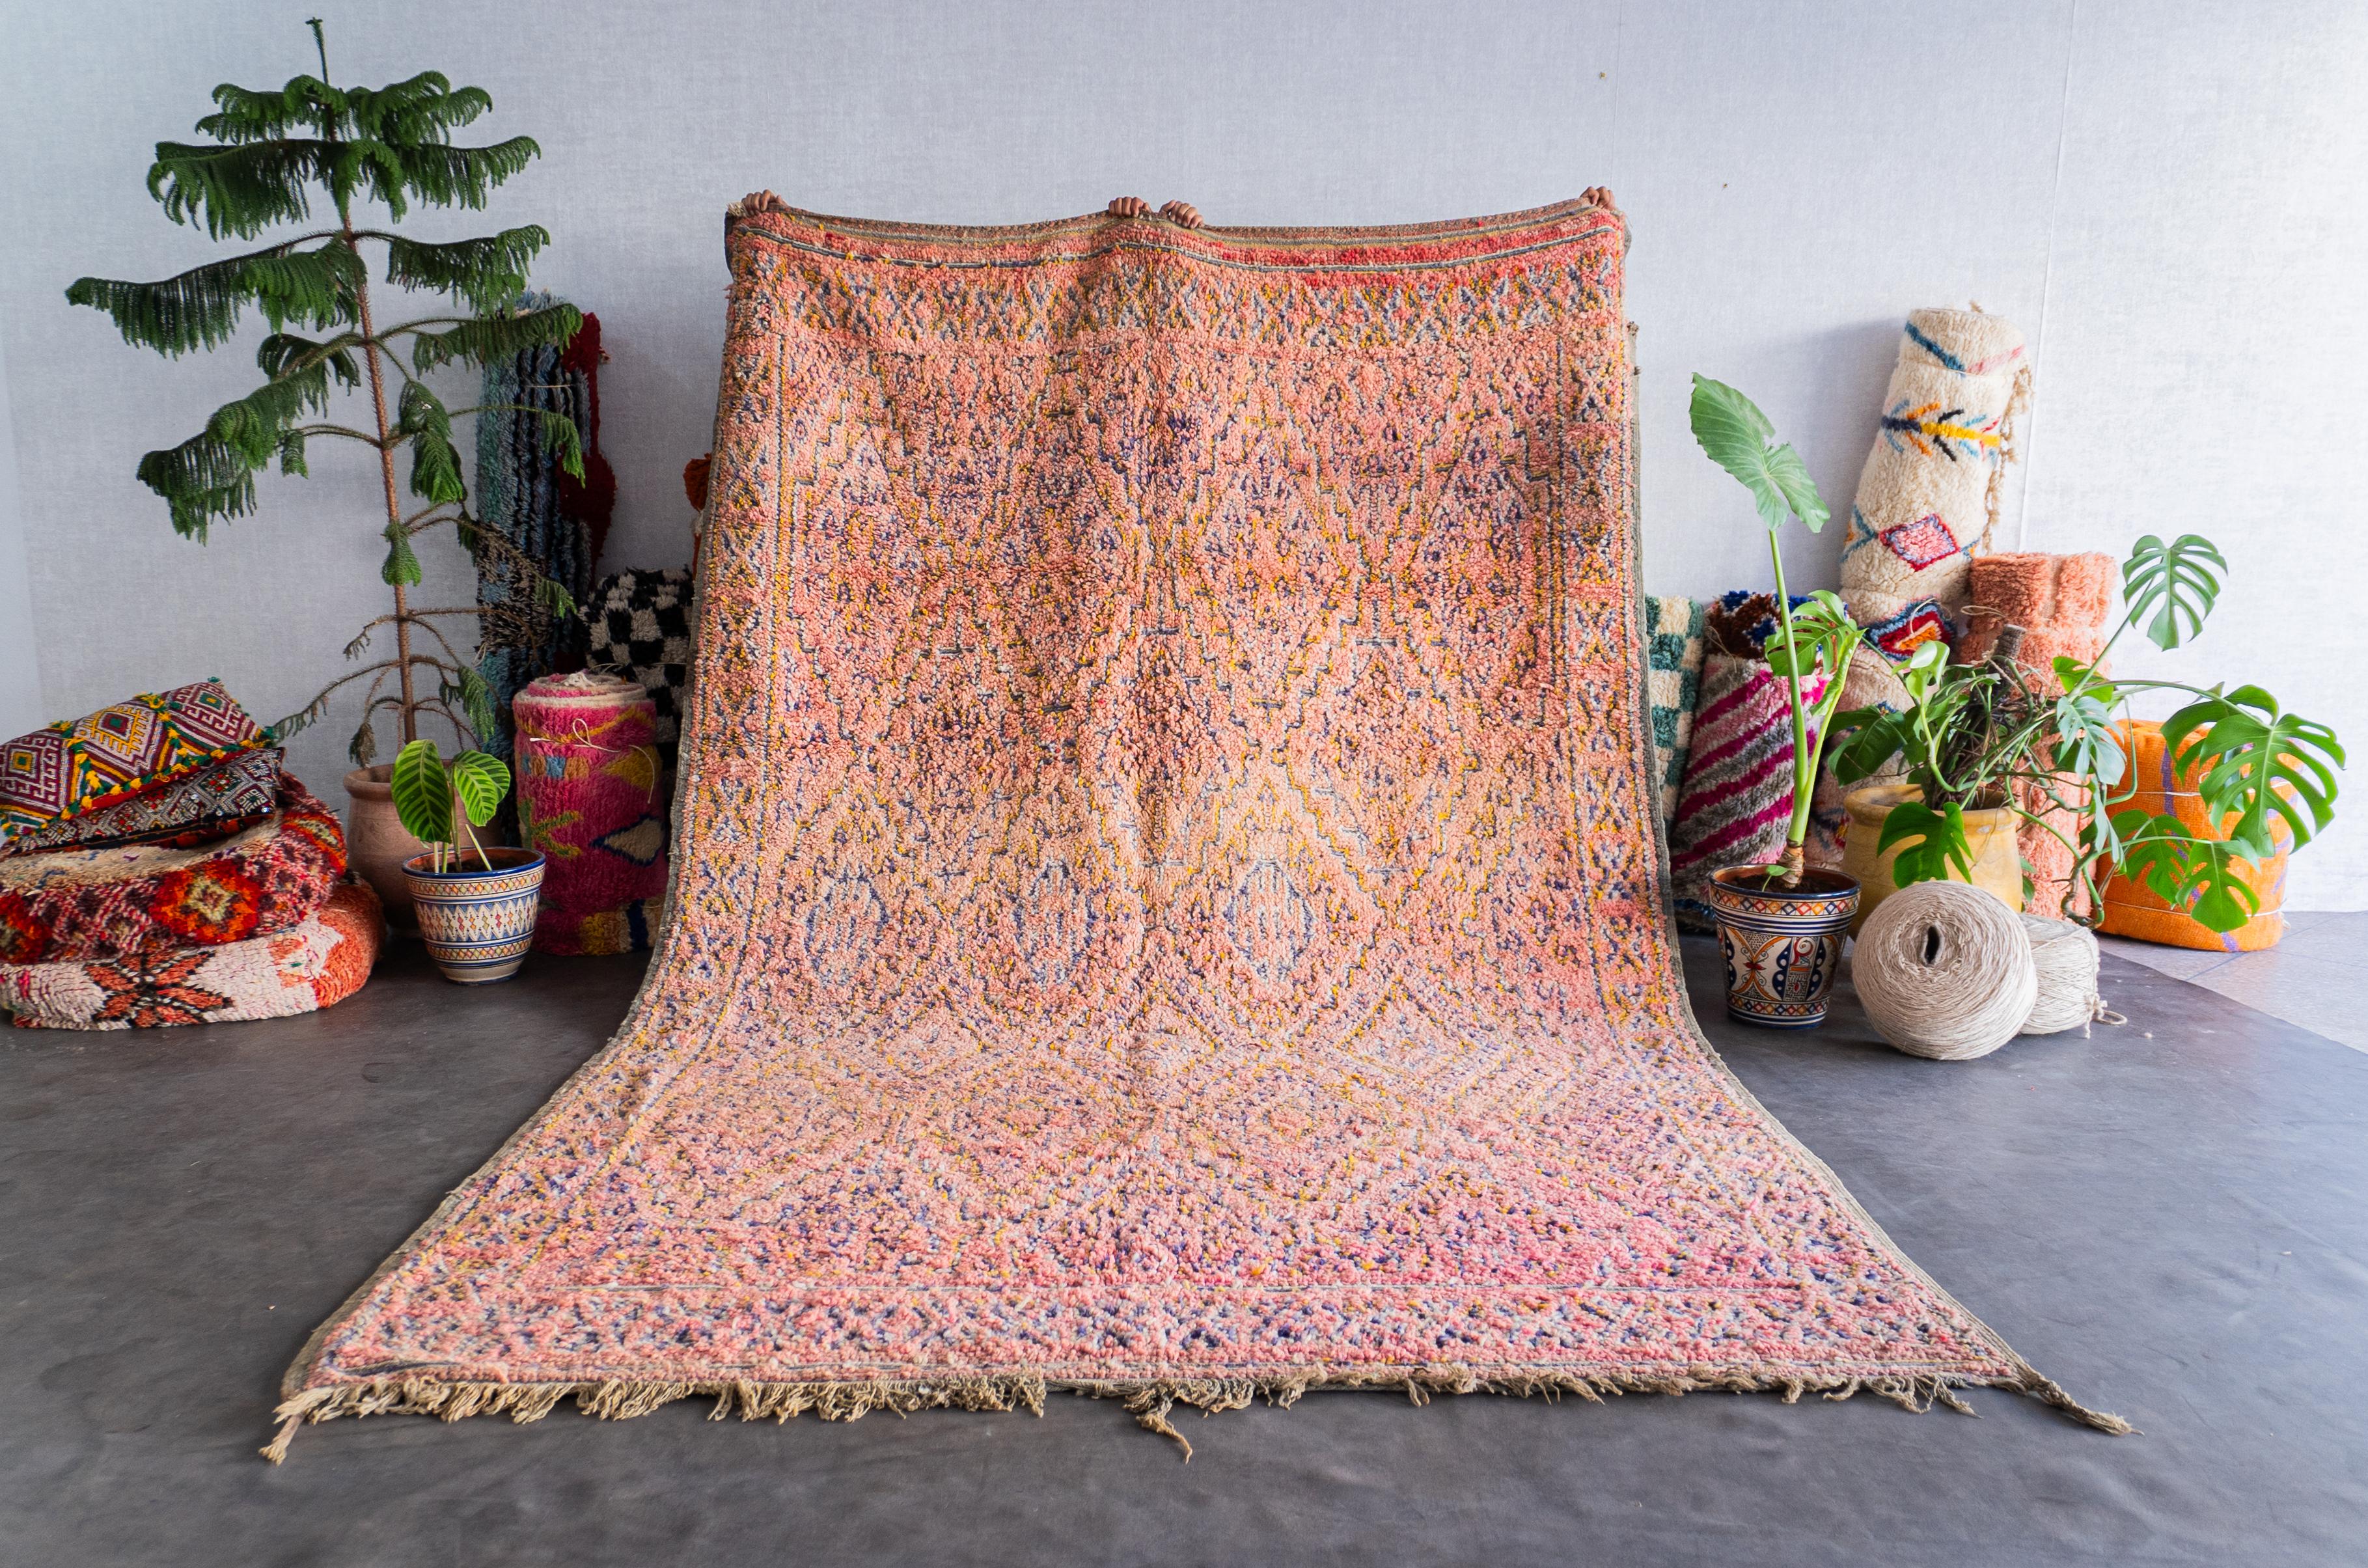 Découvrez le riche héritage tissé dans notre tapis marocain vintage. Fabriqué à la main par des artisans qualifiés selon des techniques éprouvées, chaque tapis berbère est un récit unique qui fait écho à la tapisserie culturelle du Maroc. Avec ses